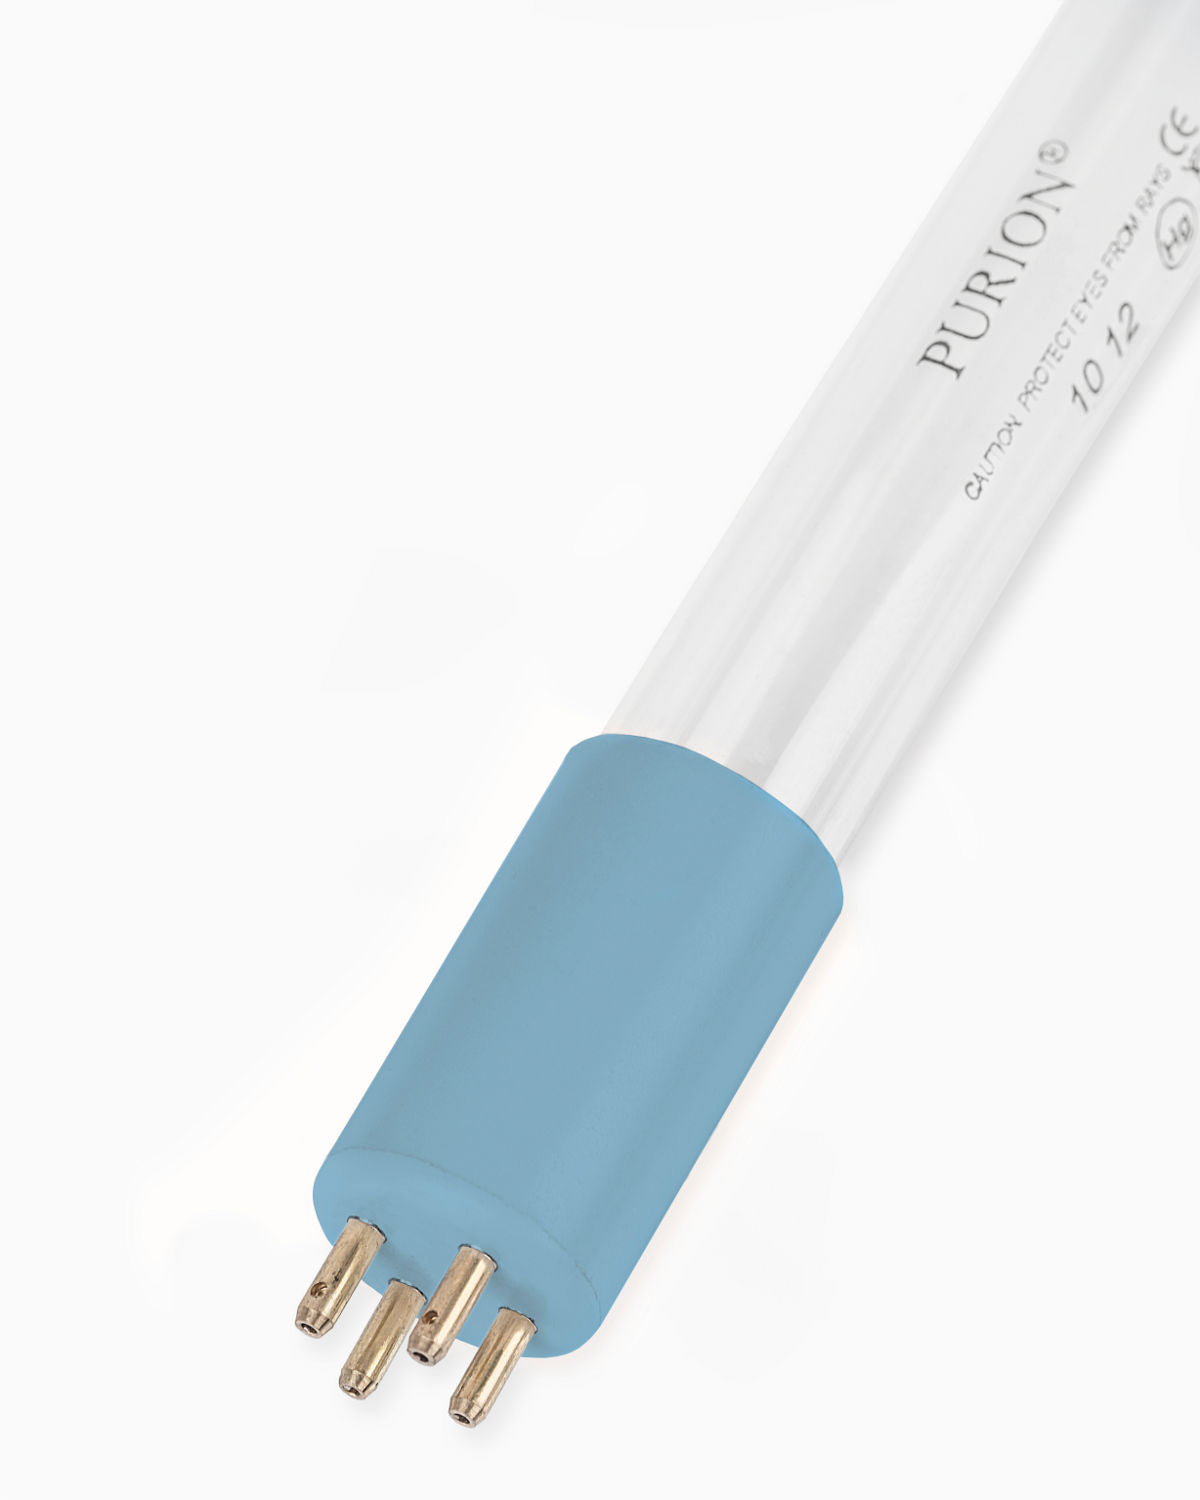 Eine blaue PURION 1000 H OPD-Lichtröhre auf weißem Hintergrund.